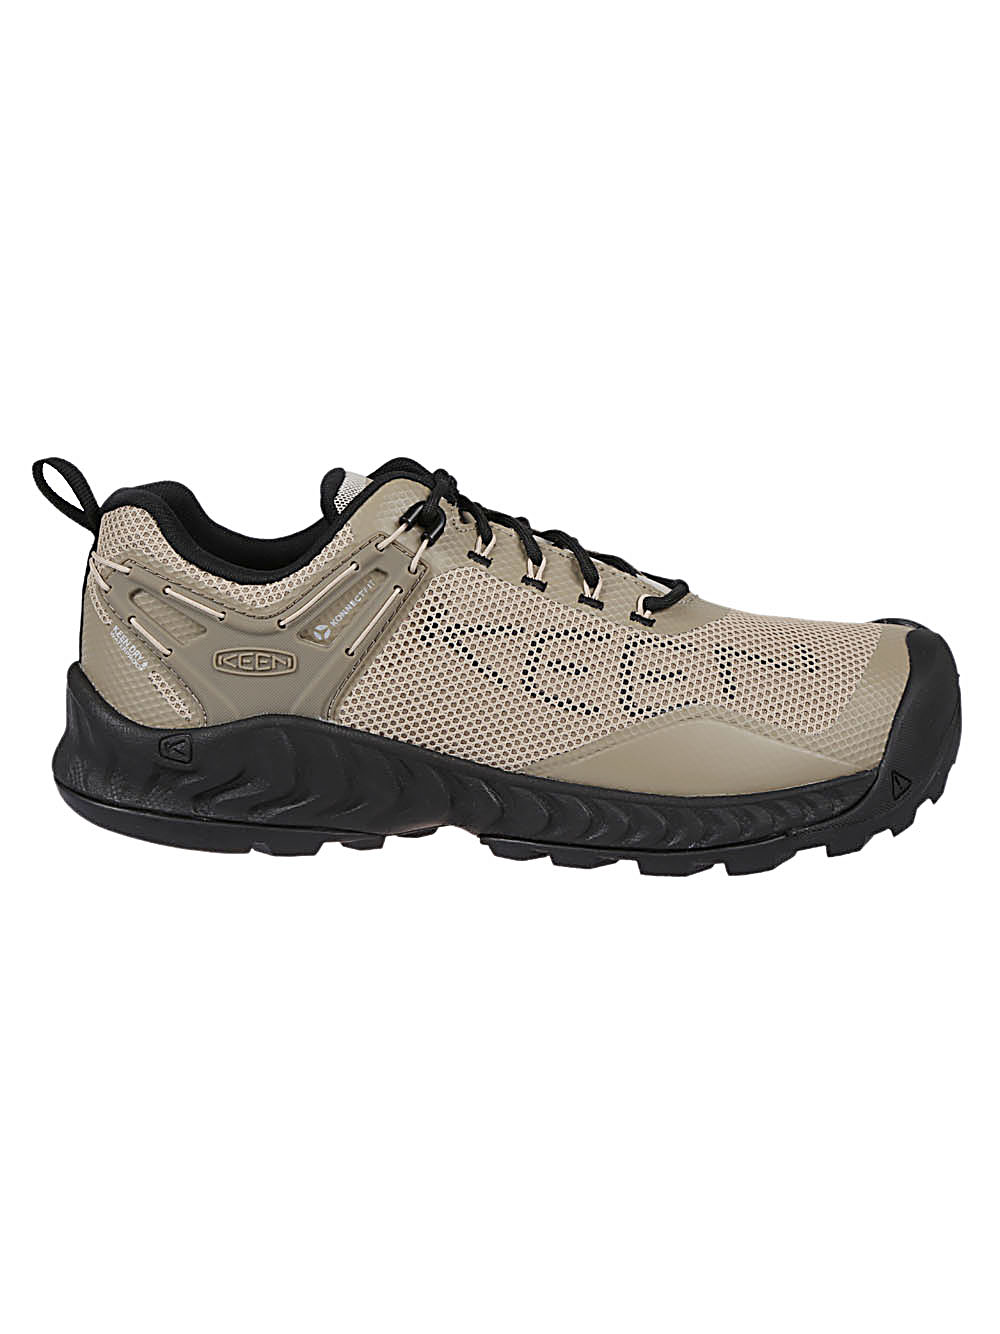 Keen KEEN- Nxis Evo Waterproof Sneakers